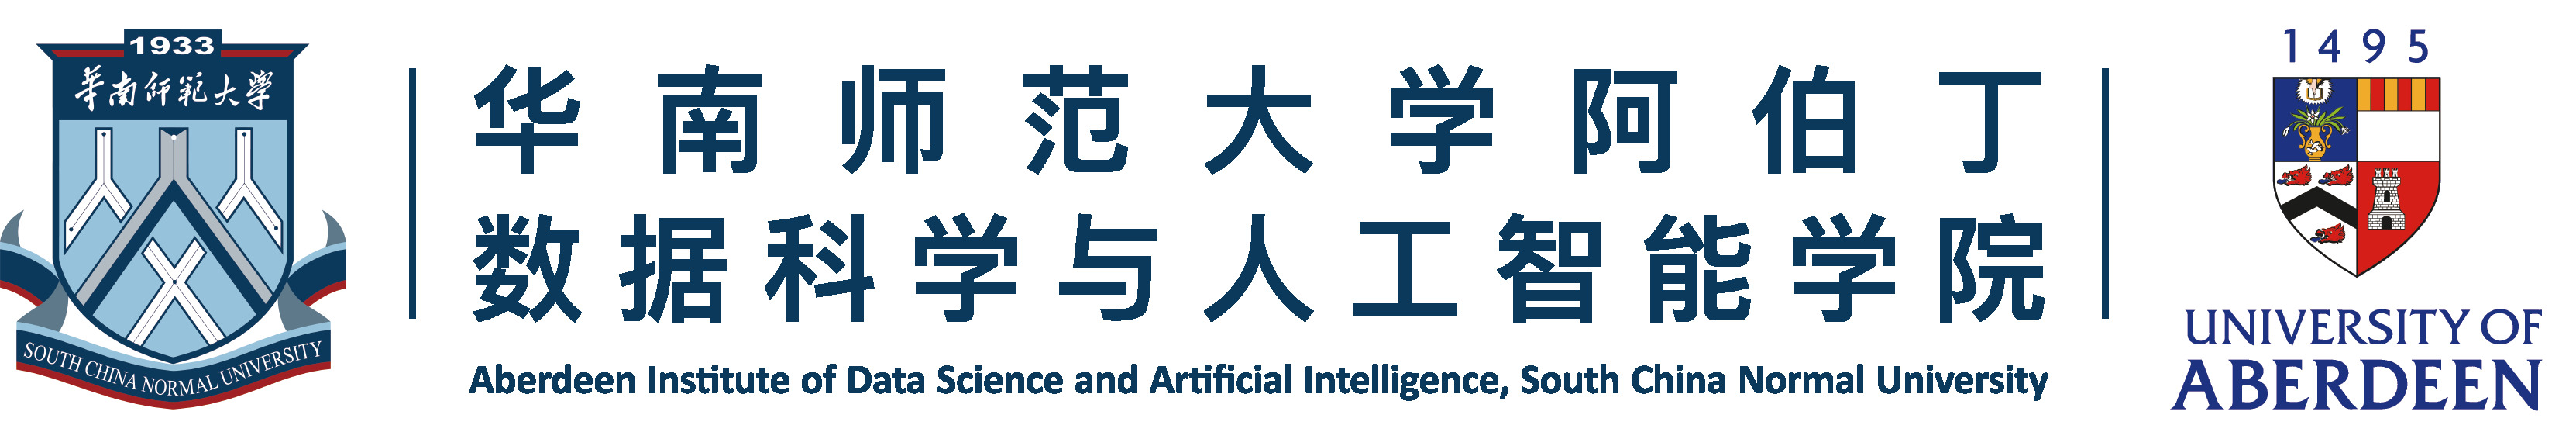 华南师范大学阿伯丁数据科学与人工智能学院